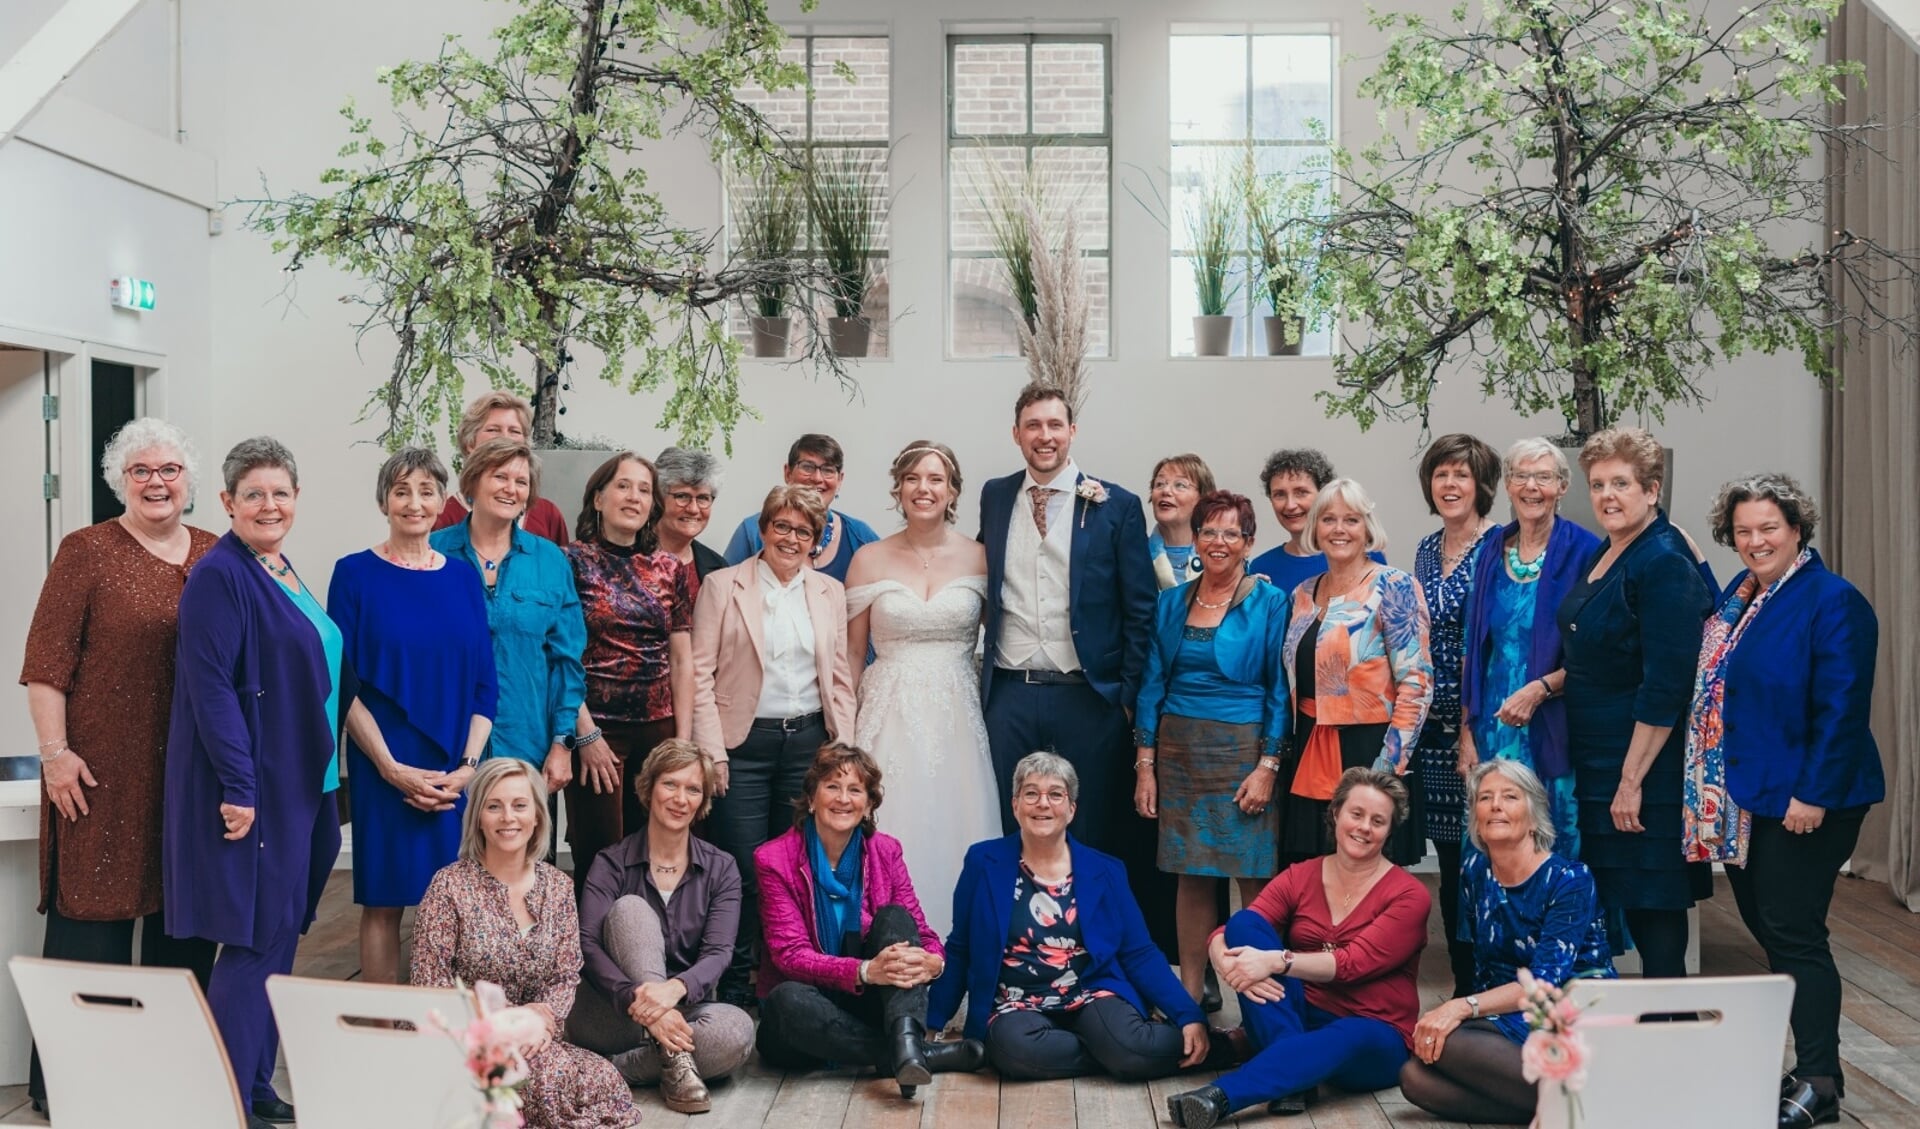 Groepsfoto TimeLEZ tijdens ons meest recente optreden in april 2022, voor, tijdens en na de trouwceremonie van onze dirigente Floor 